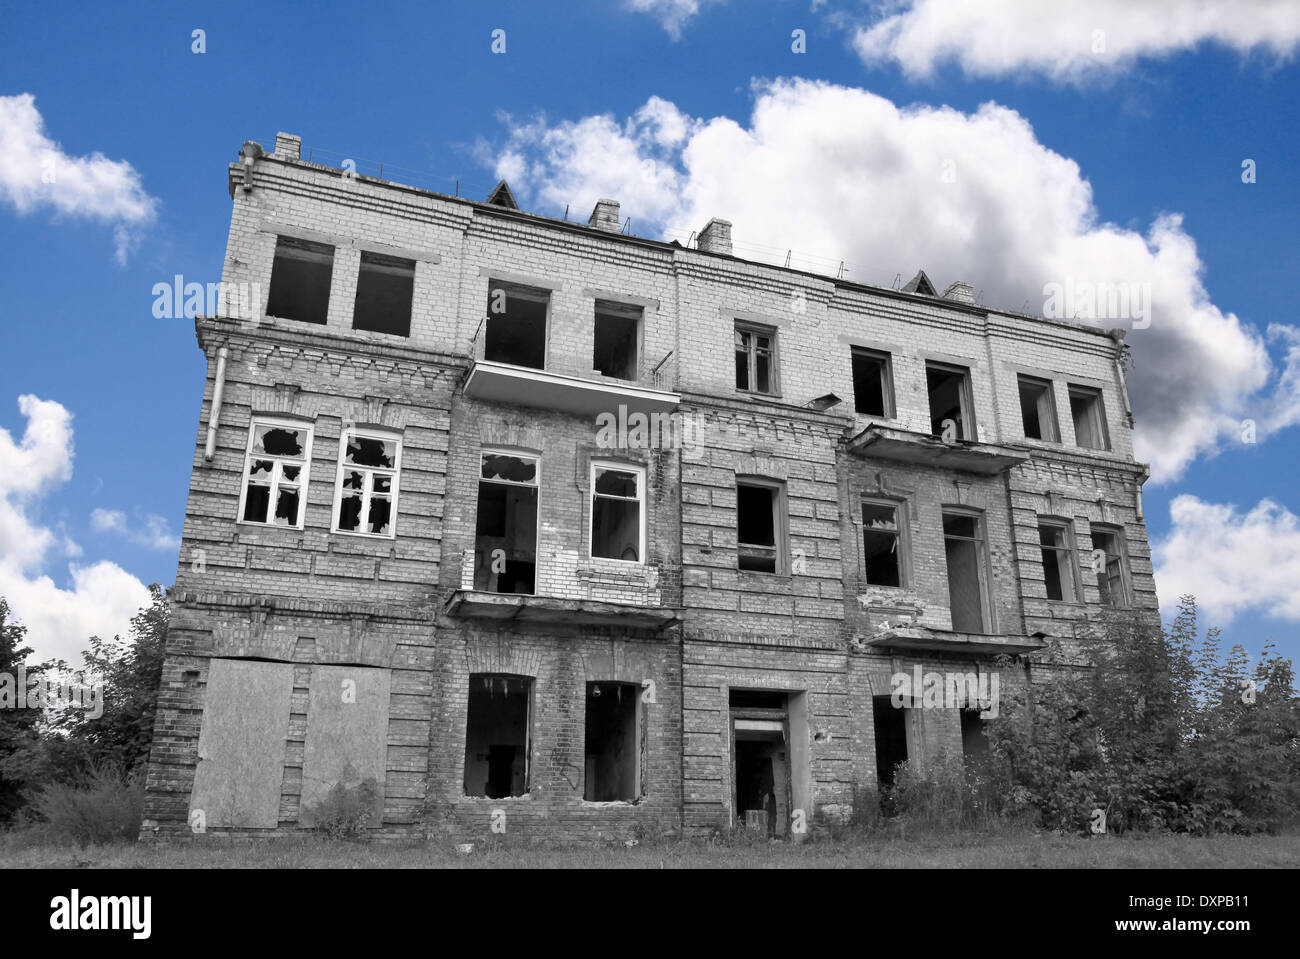 Le noir et blanc maison abandonnée ruines against colorful blue cloudy sky Banque D'Images